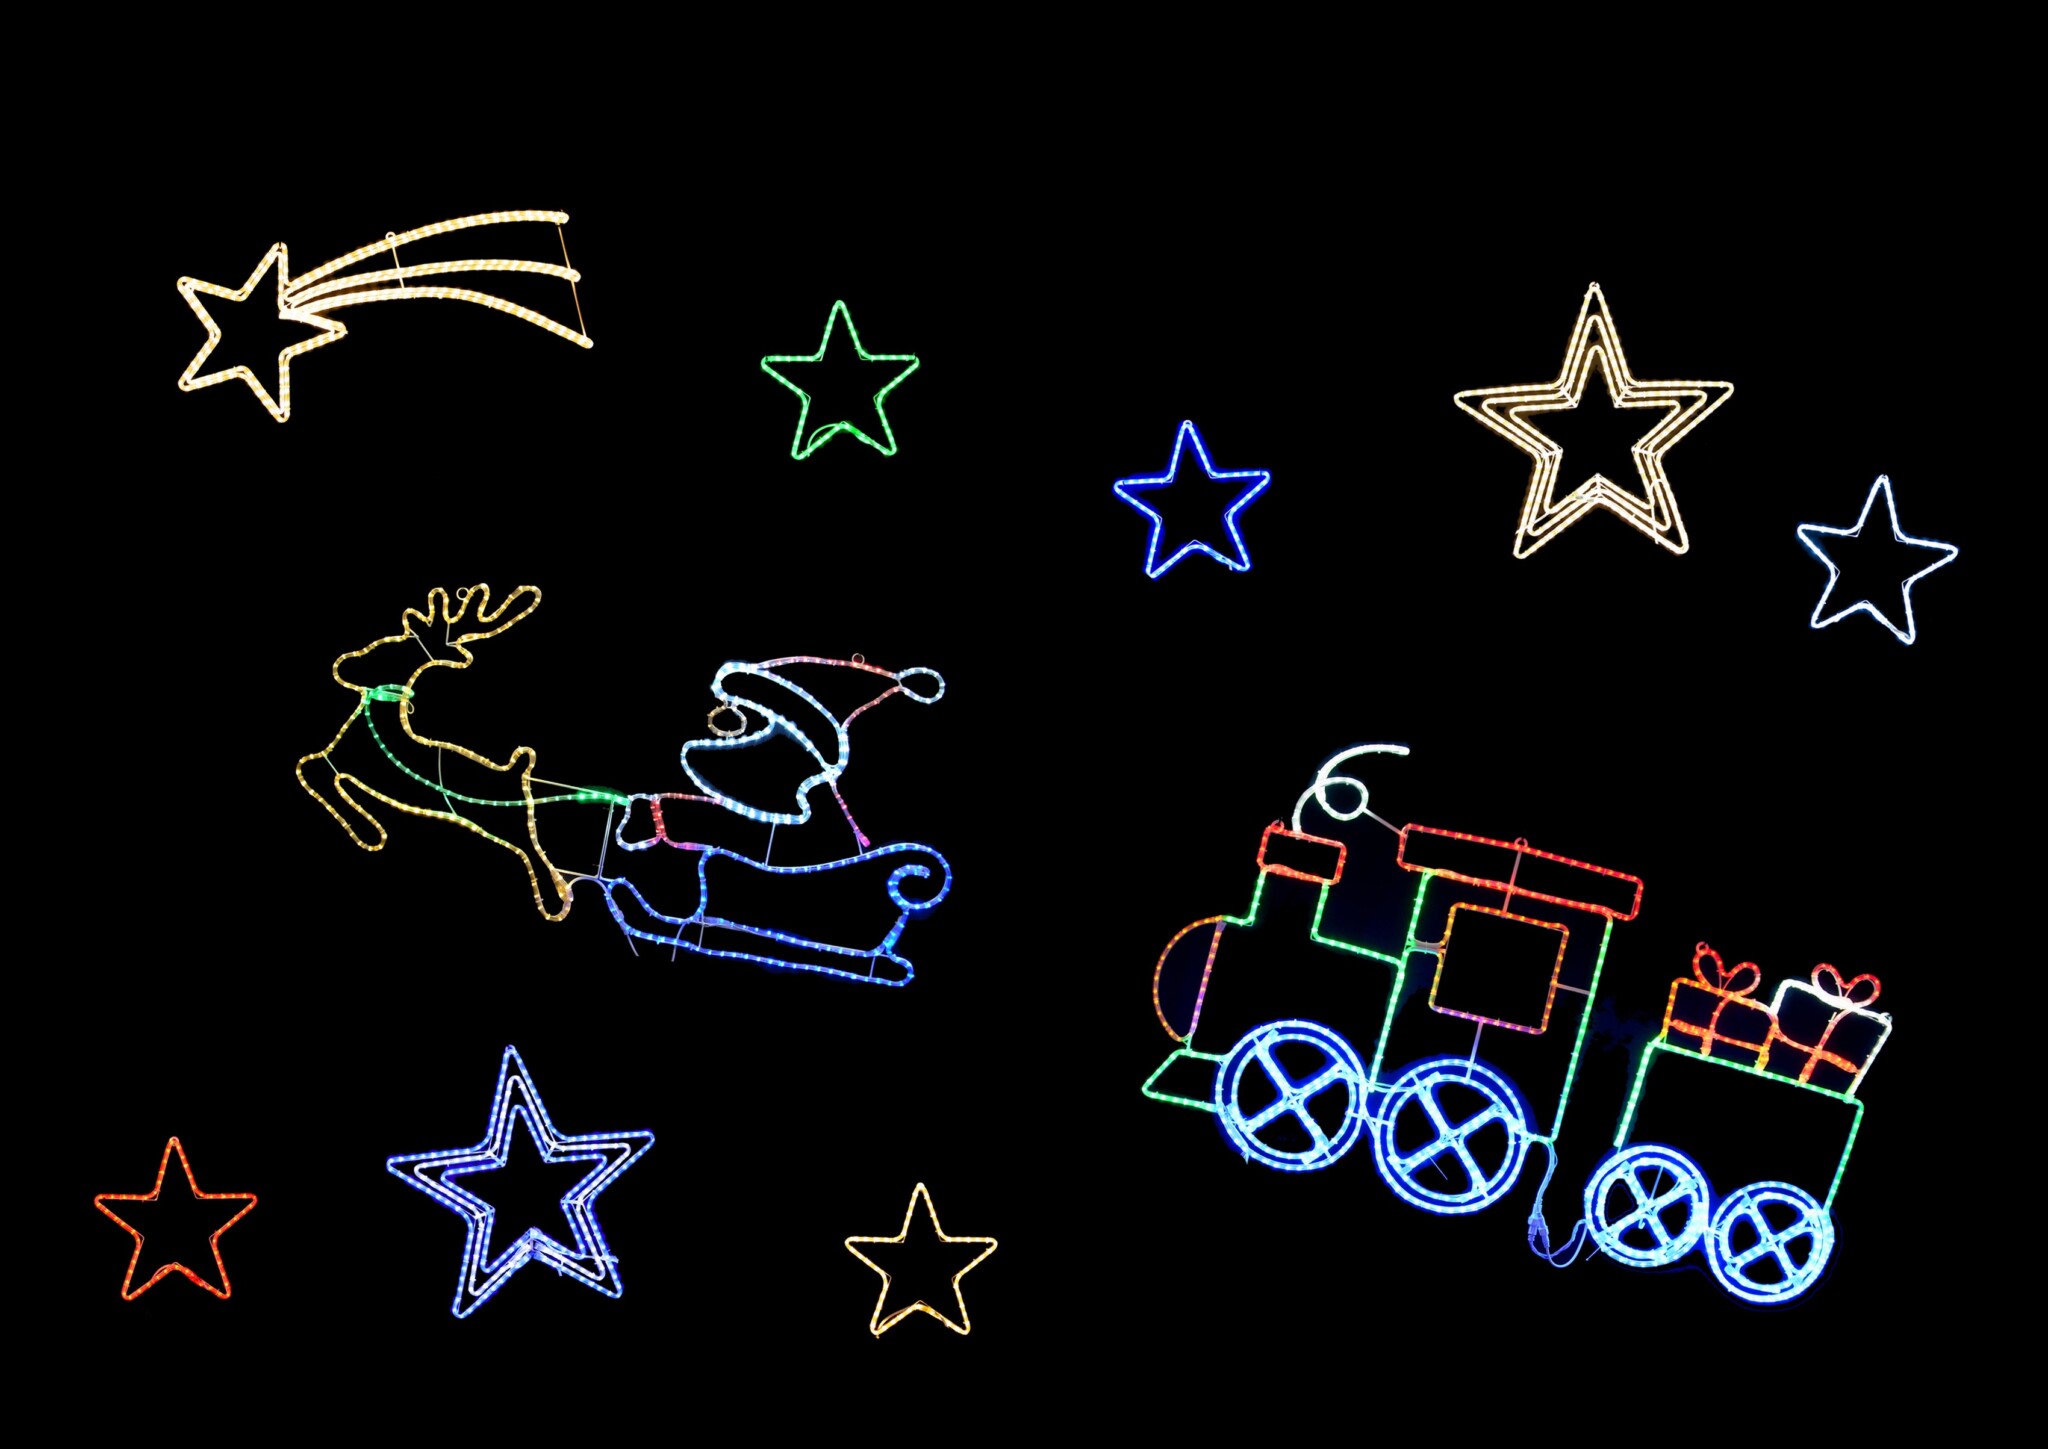 クリスマスデコレーション はしごサンタ DCH-011 クリスマス イルミネーション ハシゴサンタ 組み立て式 サンタクロース モチーフライト - 3